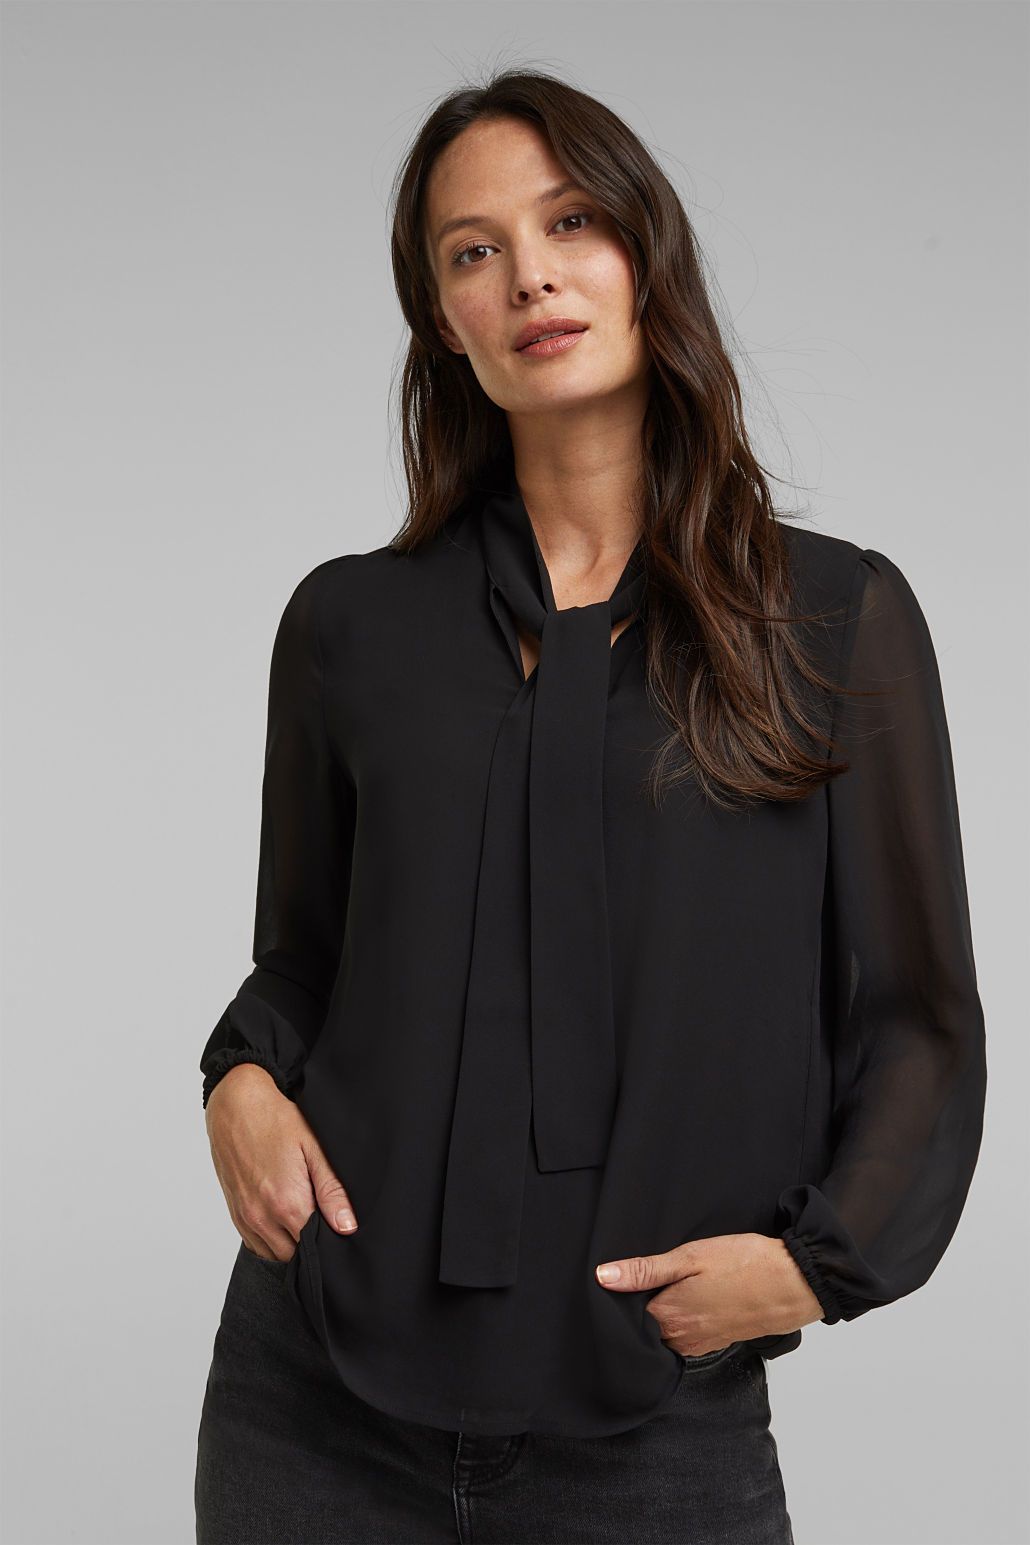 Begin Kolonel moederlijk Esprit blouse met strik zwart 110EE1F315 E001